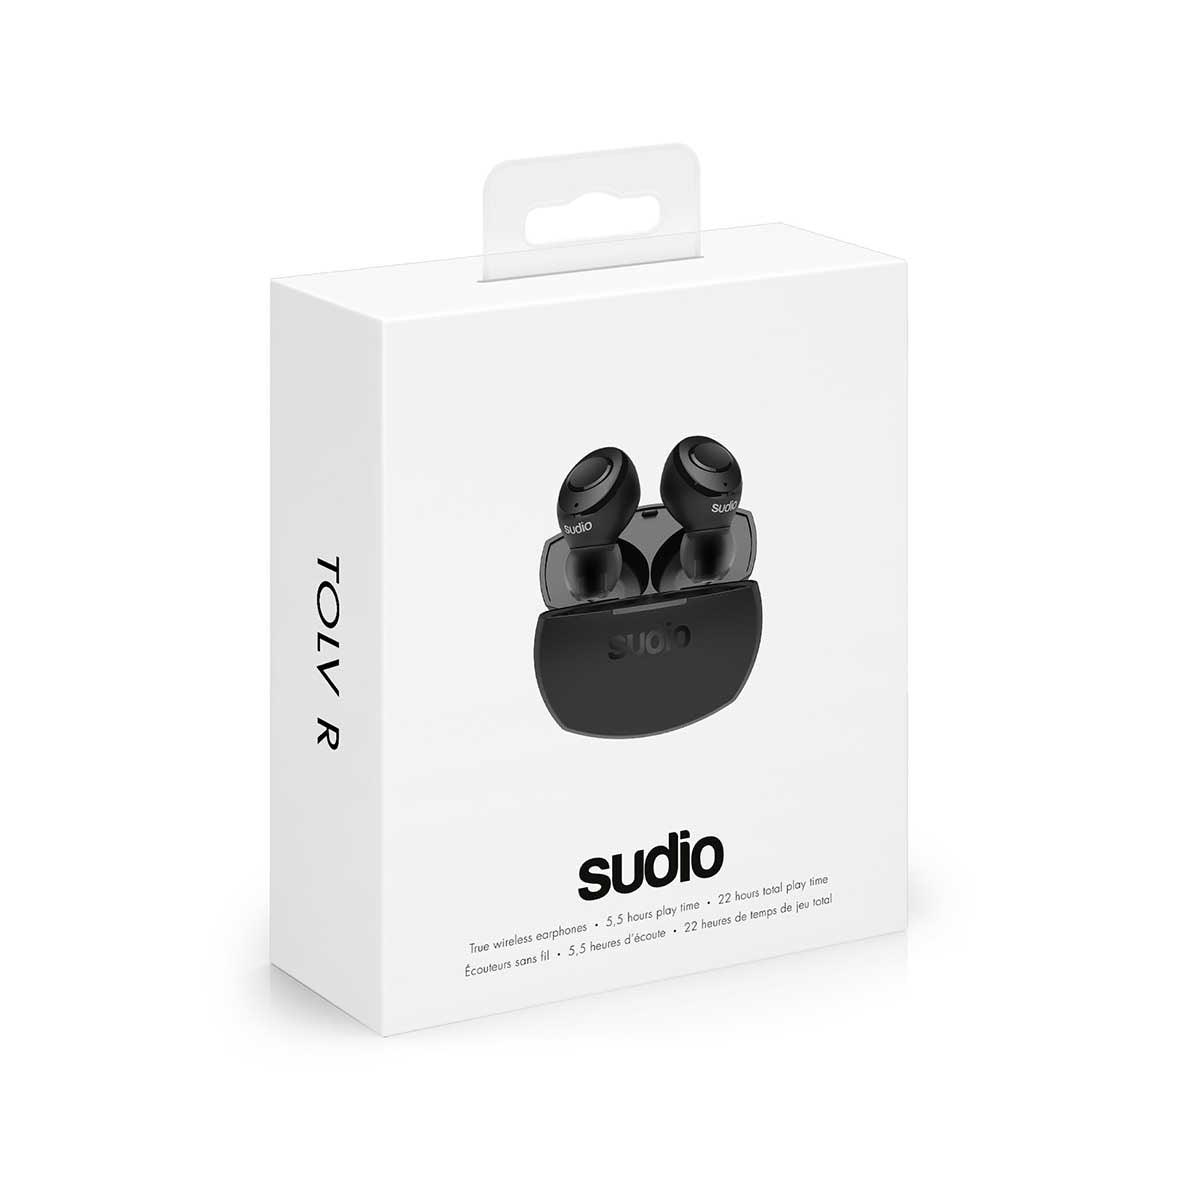 sudio true wireless earbuds